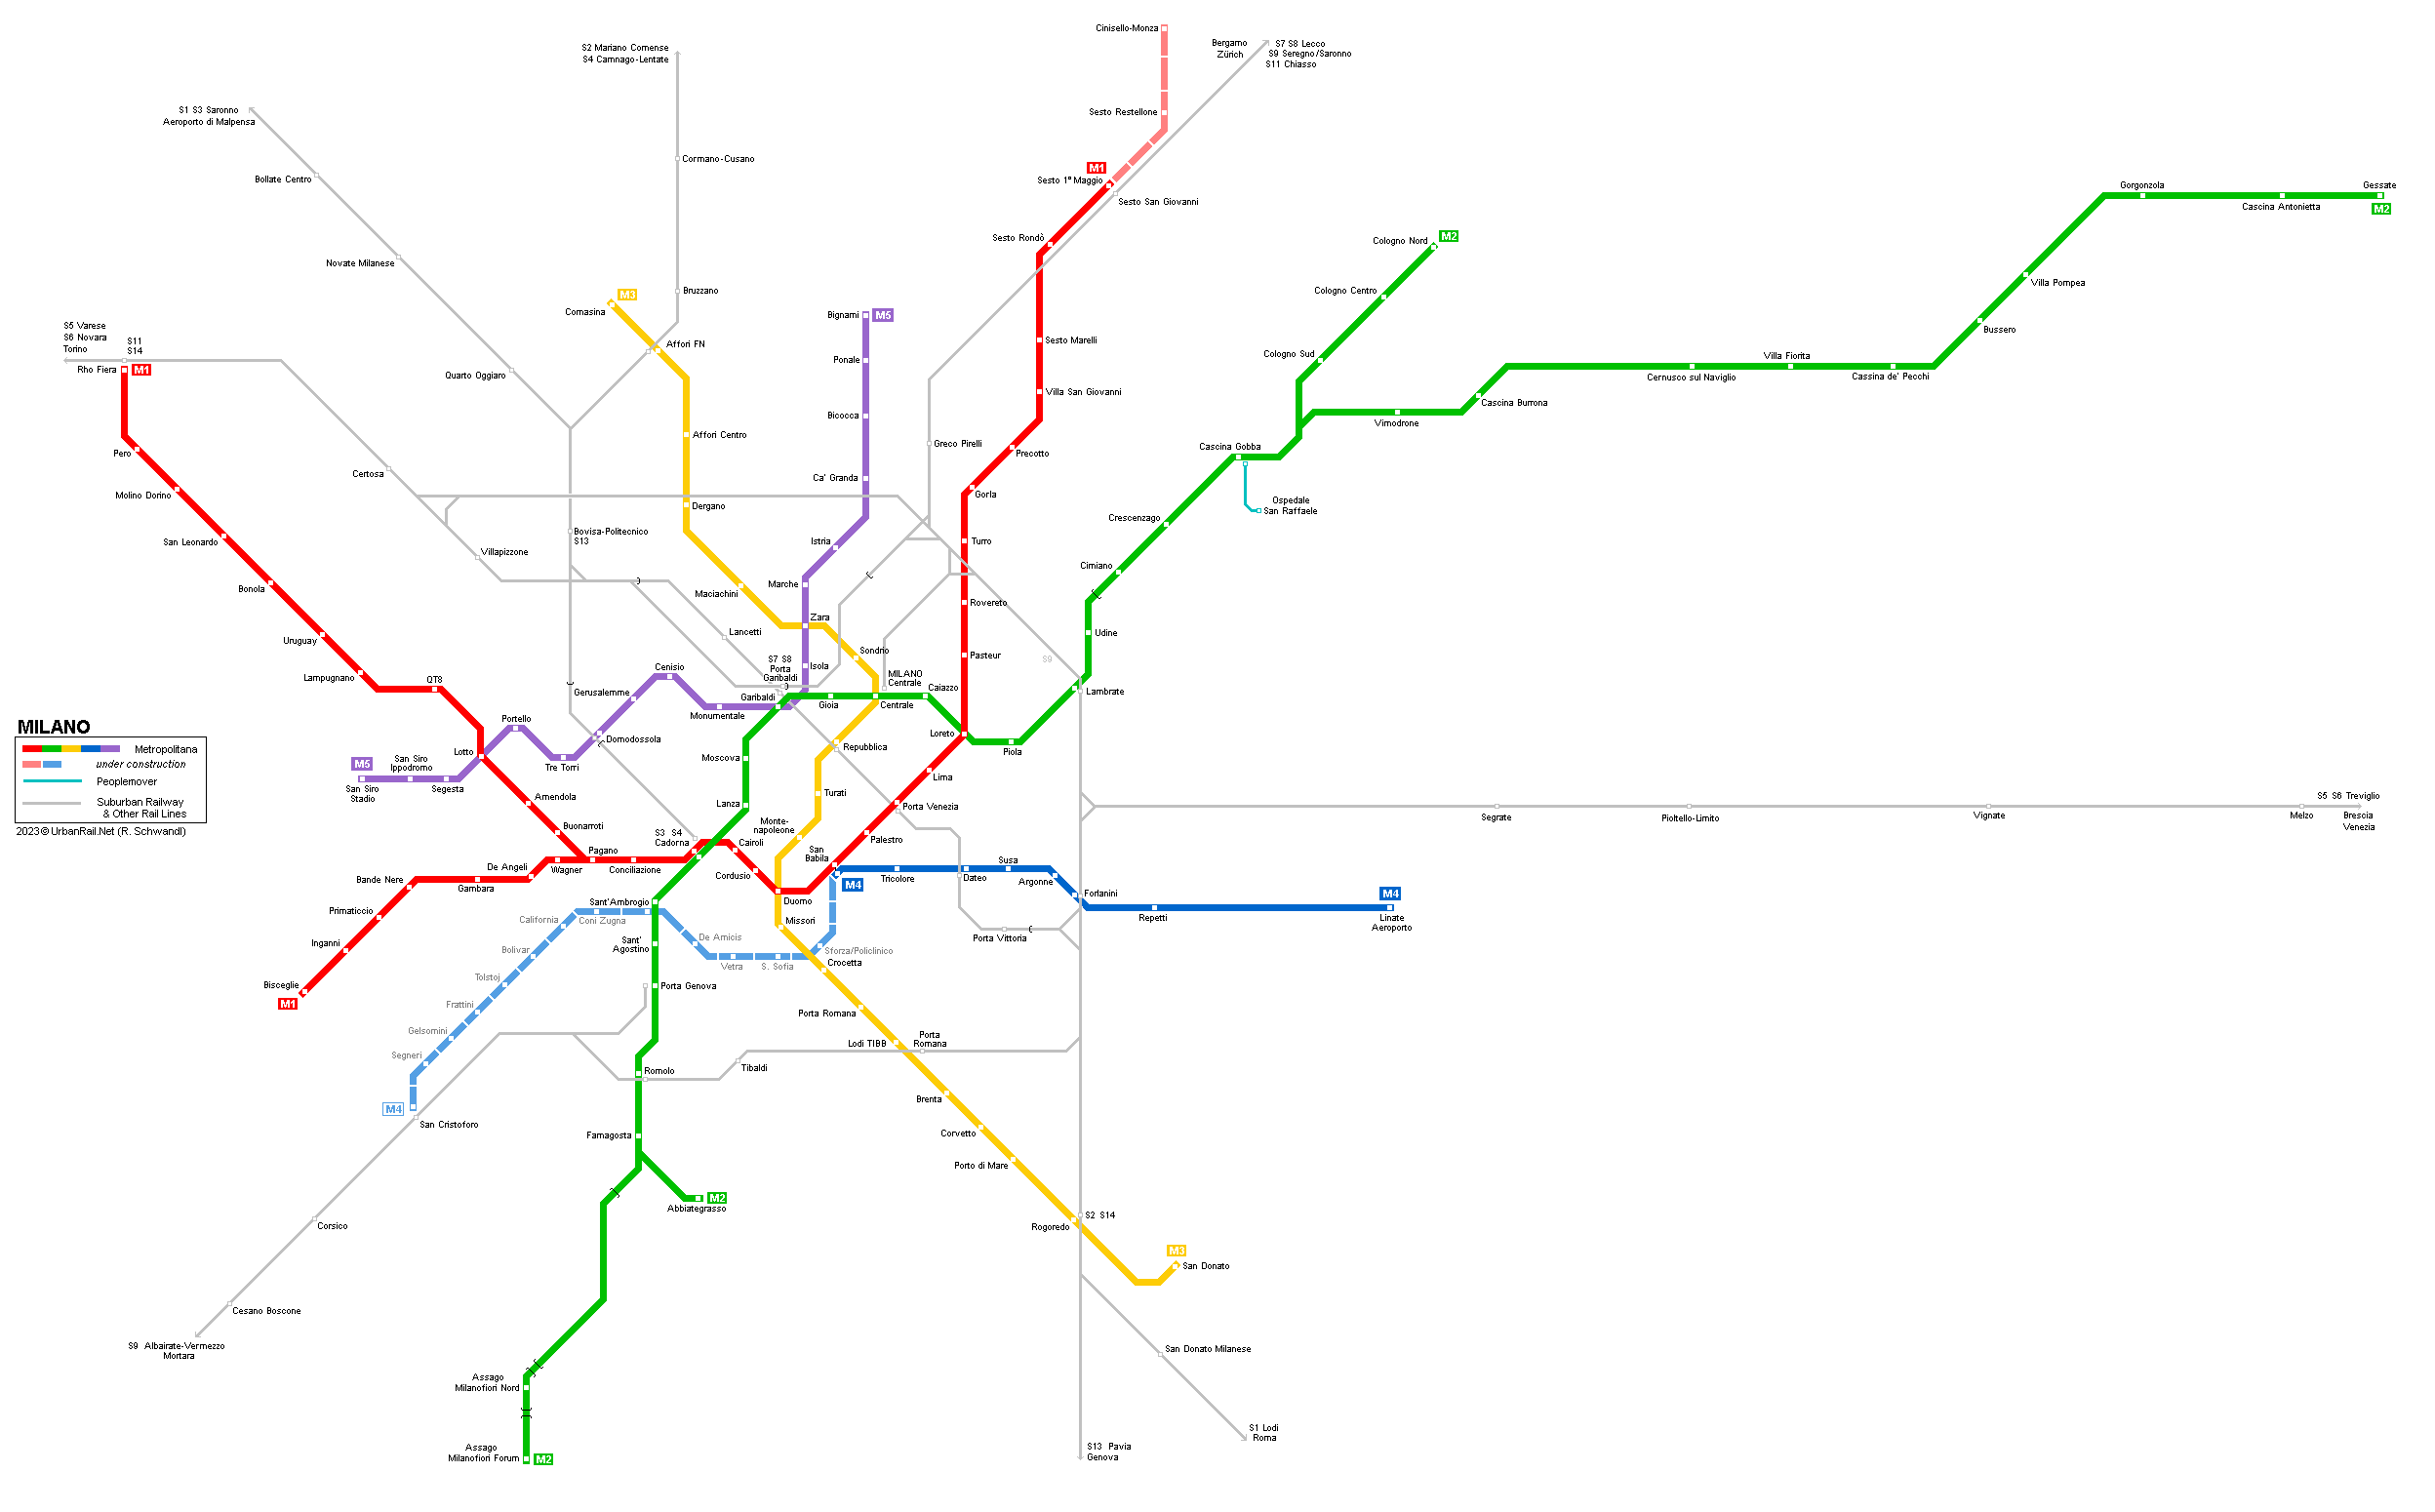 MILANO Metro Map